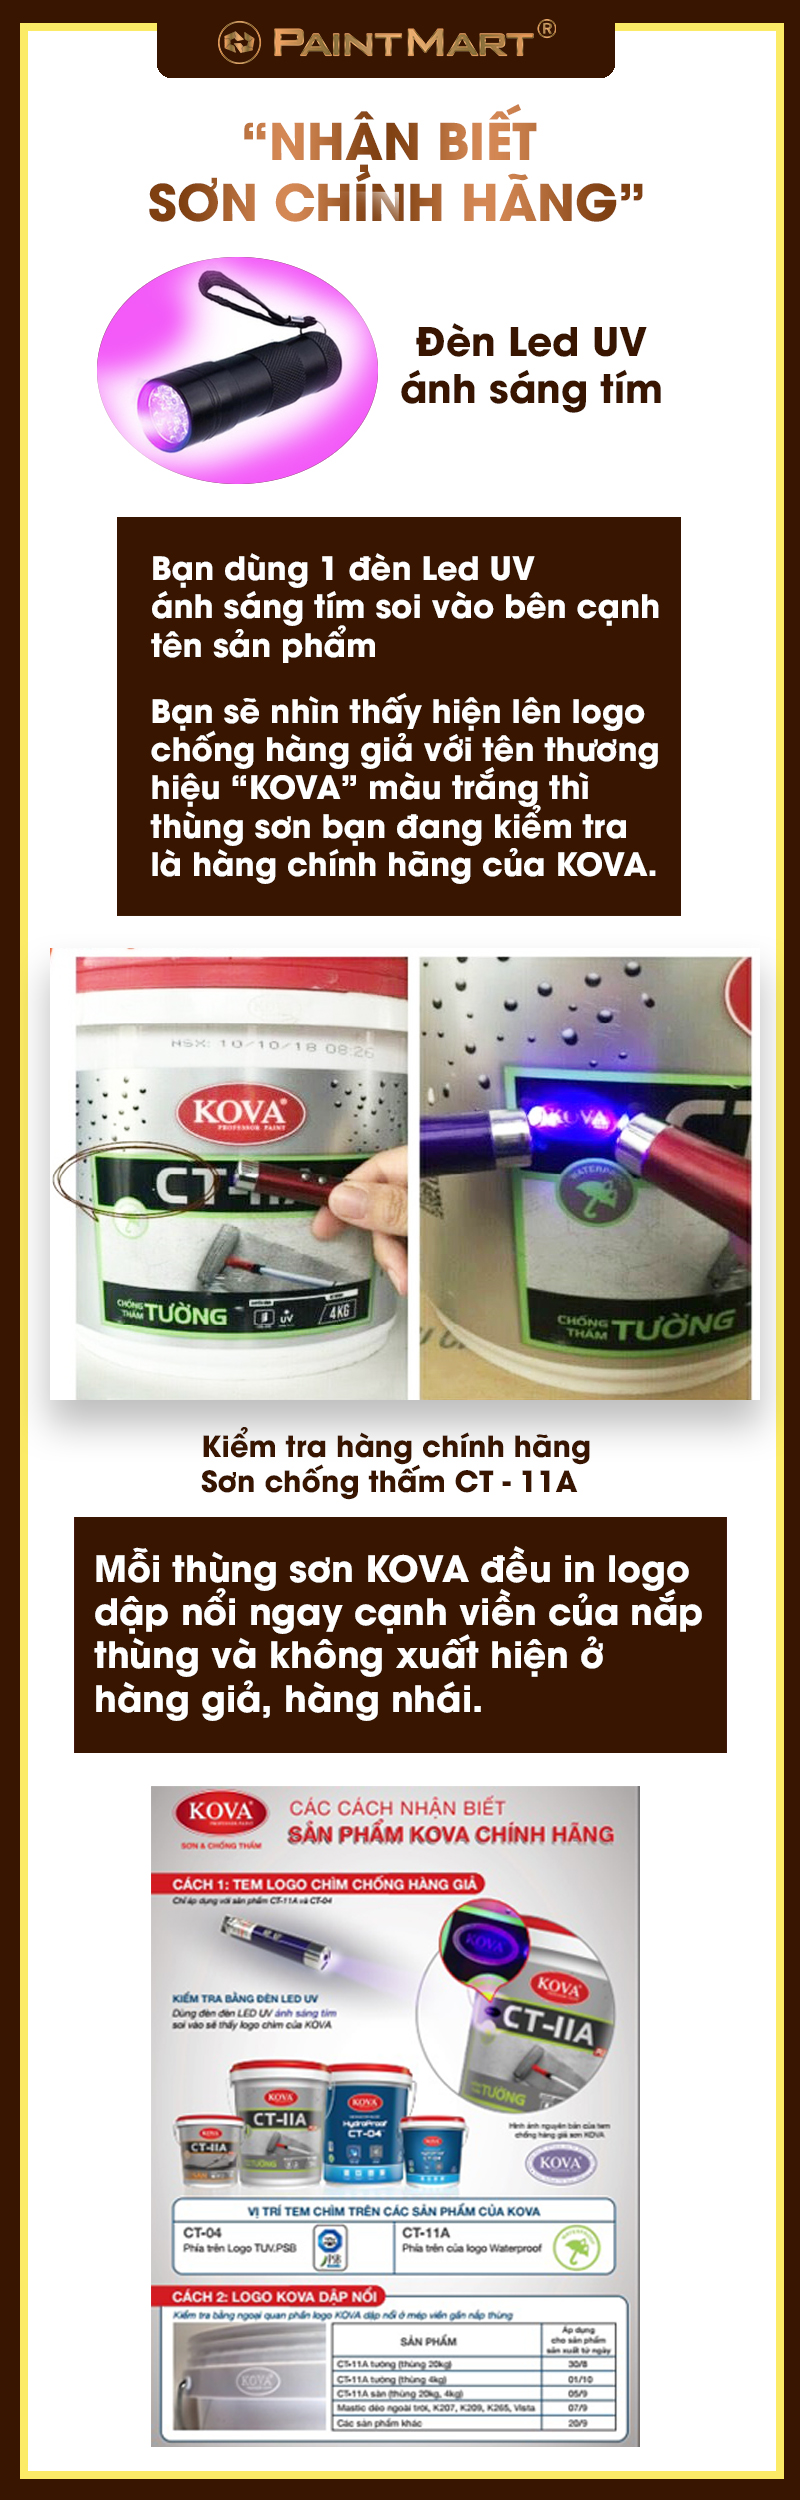 Sơn KOVA chính hãng: Sự thật là không có sản phẩm sơn nào có thể so sánh với sơn KOVA chính hãng. Được sản xuất với công nghệ tiên tiến và được kiểm định nghiêm ngặt, sơn KOVA sẽ làm cho ngôi nhà của bạn trở nên đẹp và bền đẹp như chưa từng thấy.